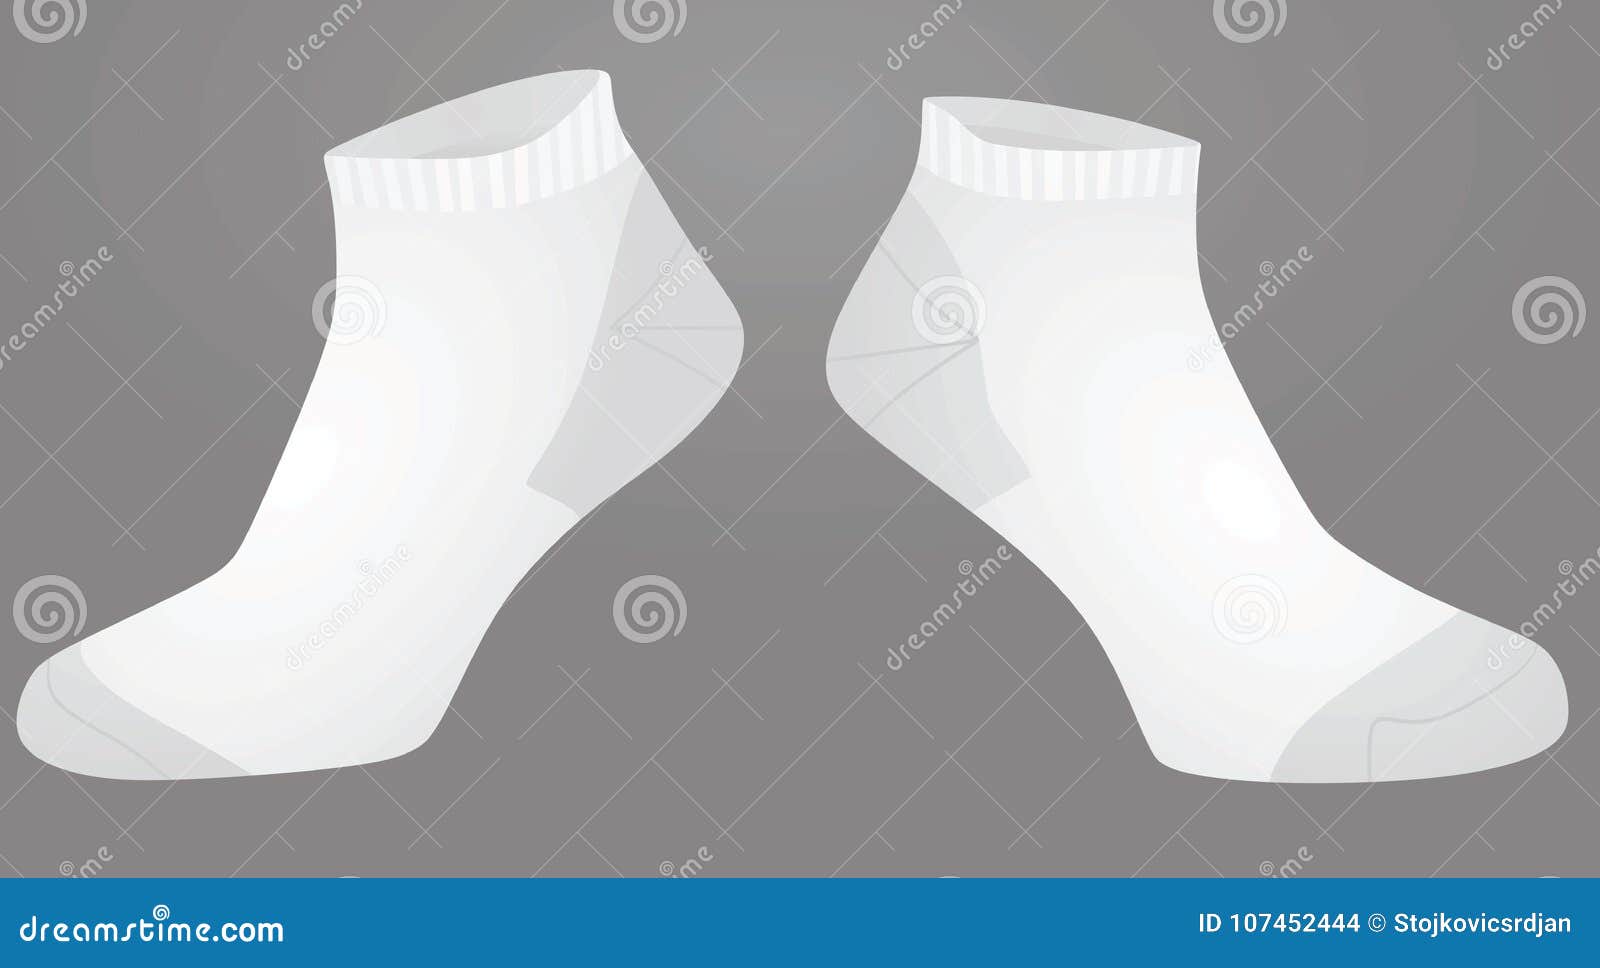 White short socks stock vector. Illustration of athletics - 107452444